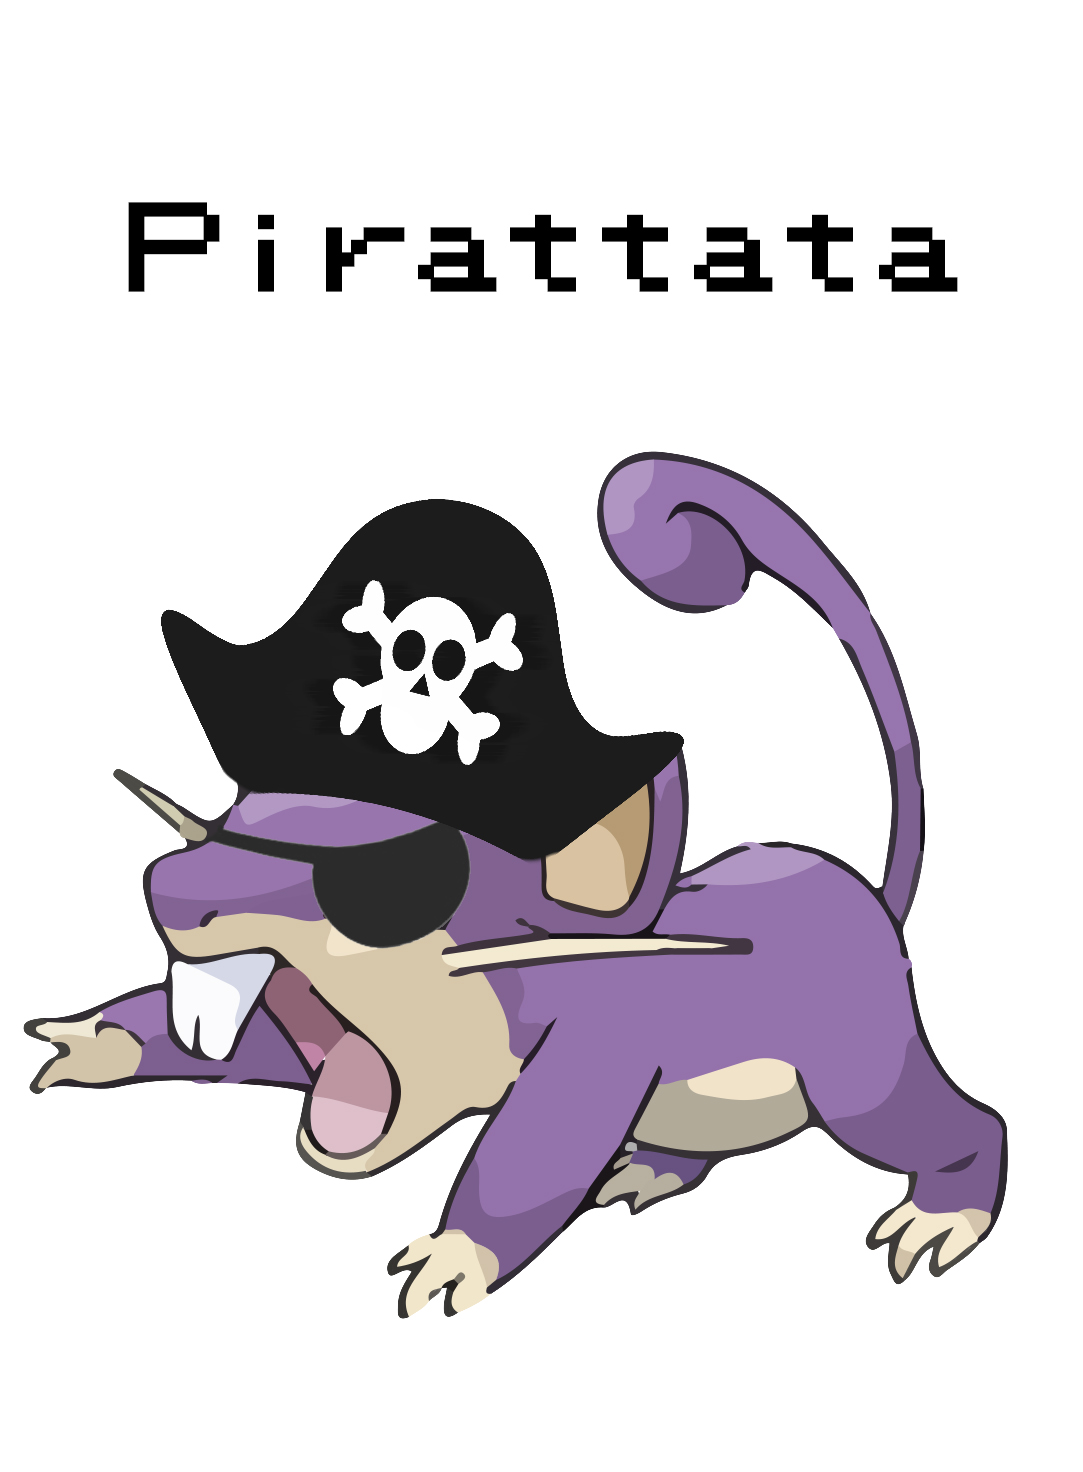 Pirattata